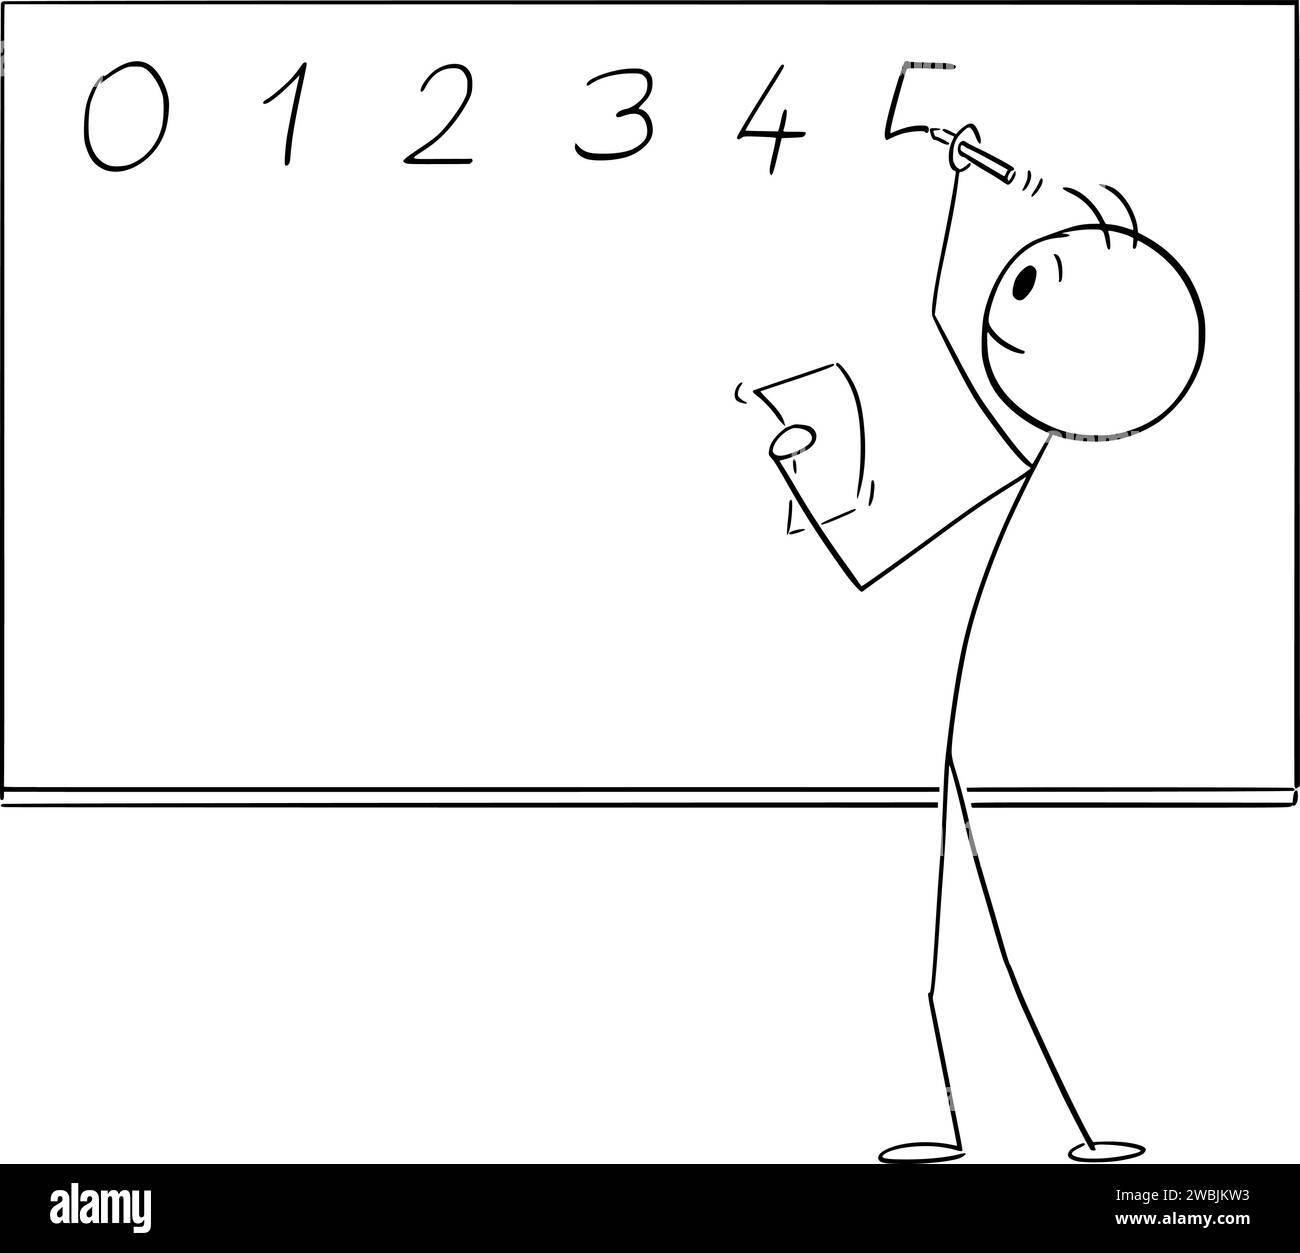 Lehrer oder Schüler schreiben Zahlen auf Whiteboard oder Blackboard, Vektor-Cartoon-Stick-Abbildung Stock Vektor